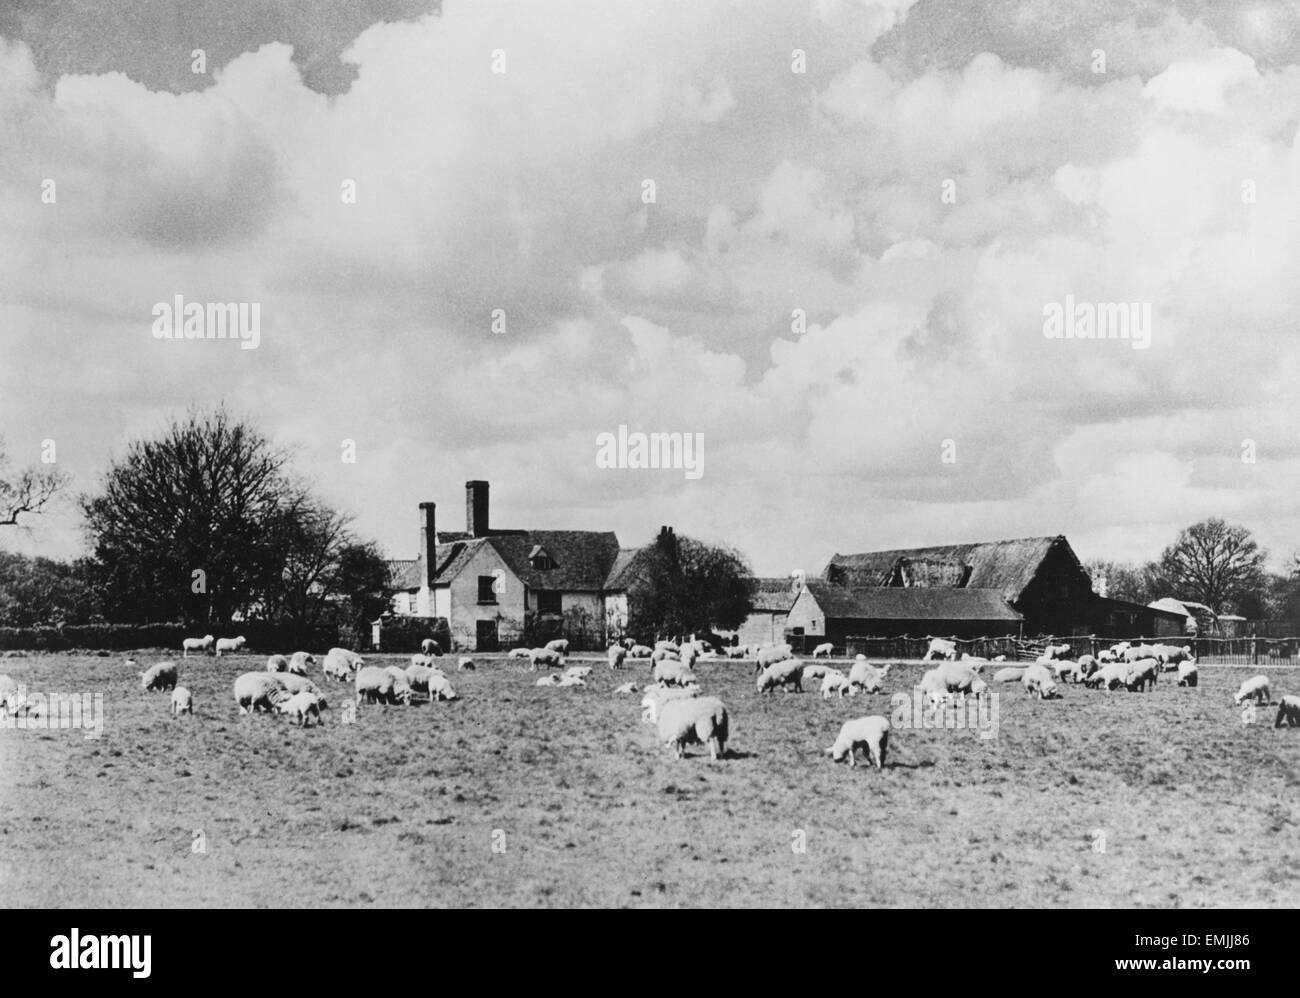 Schafe und Bauernhof, schüren von Nayland, Suffolk, England, 1935 Stockfoto